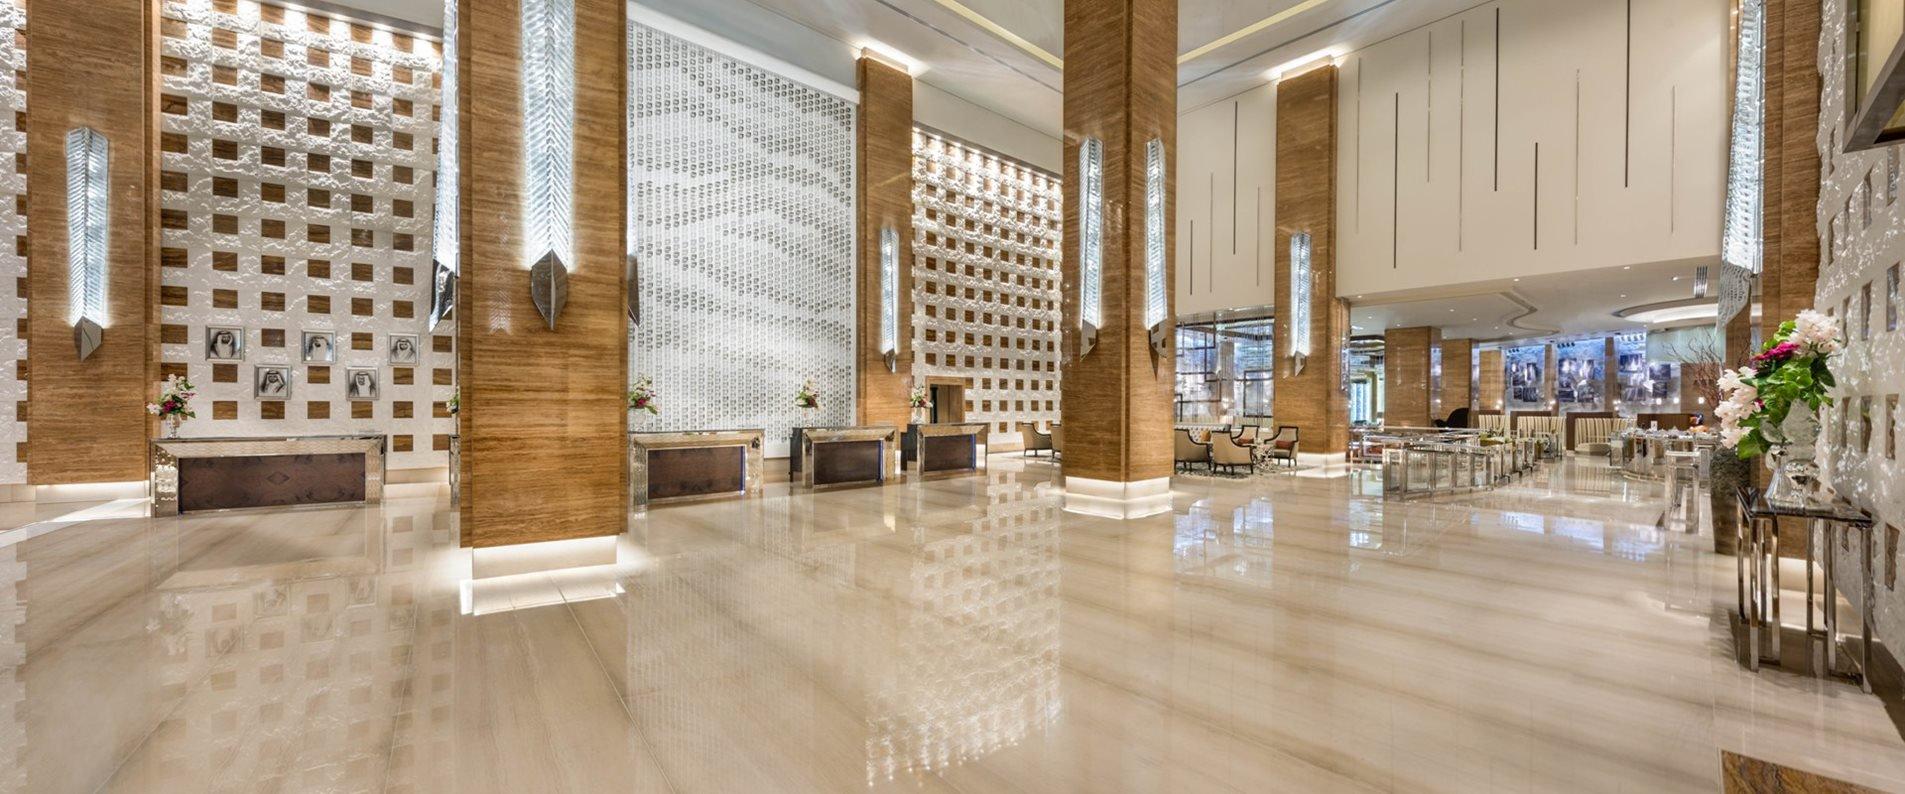 Kempinski Hotel Mall of the Emirates Lobby